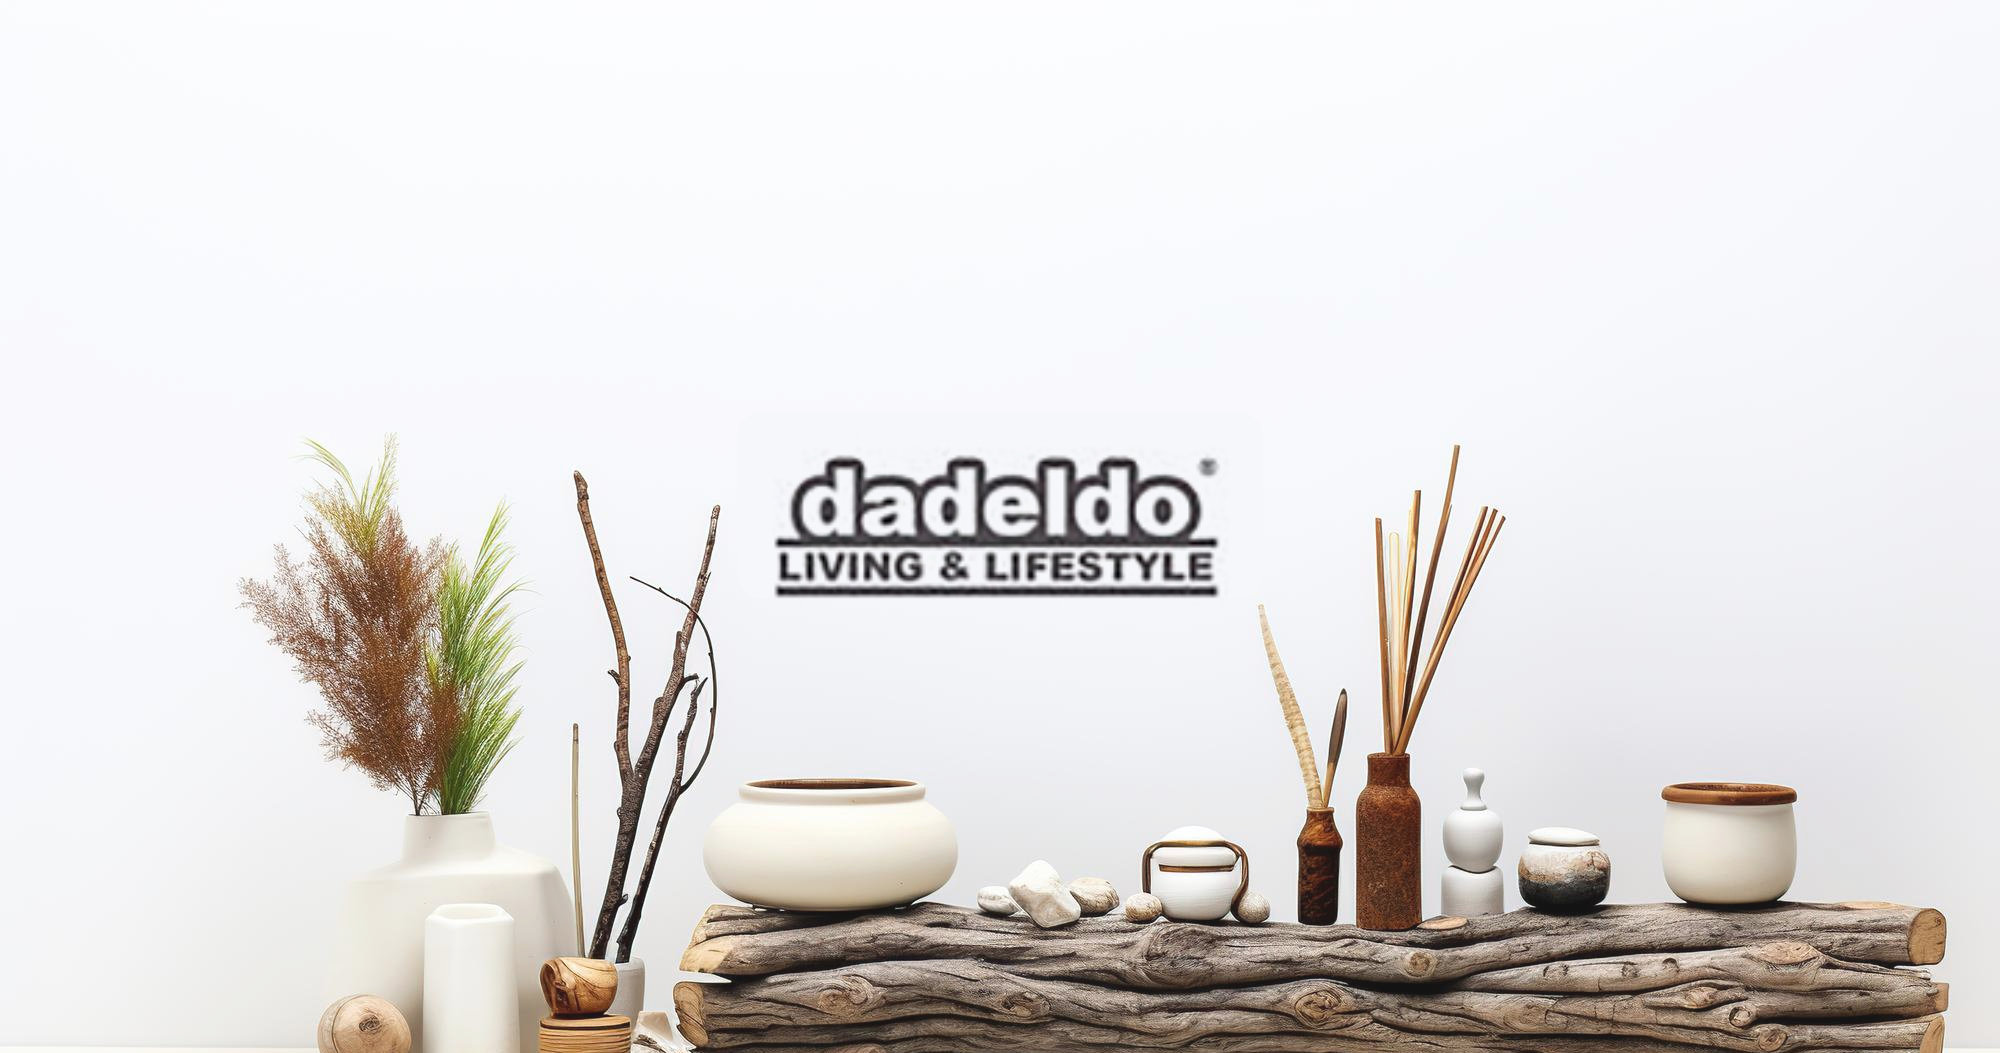 Die Verwandlung von Dadeldo: Ein Onlineshop, der seinem Charakter gerecht wird